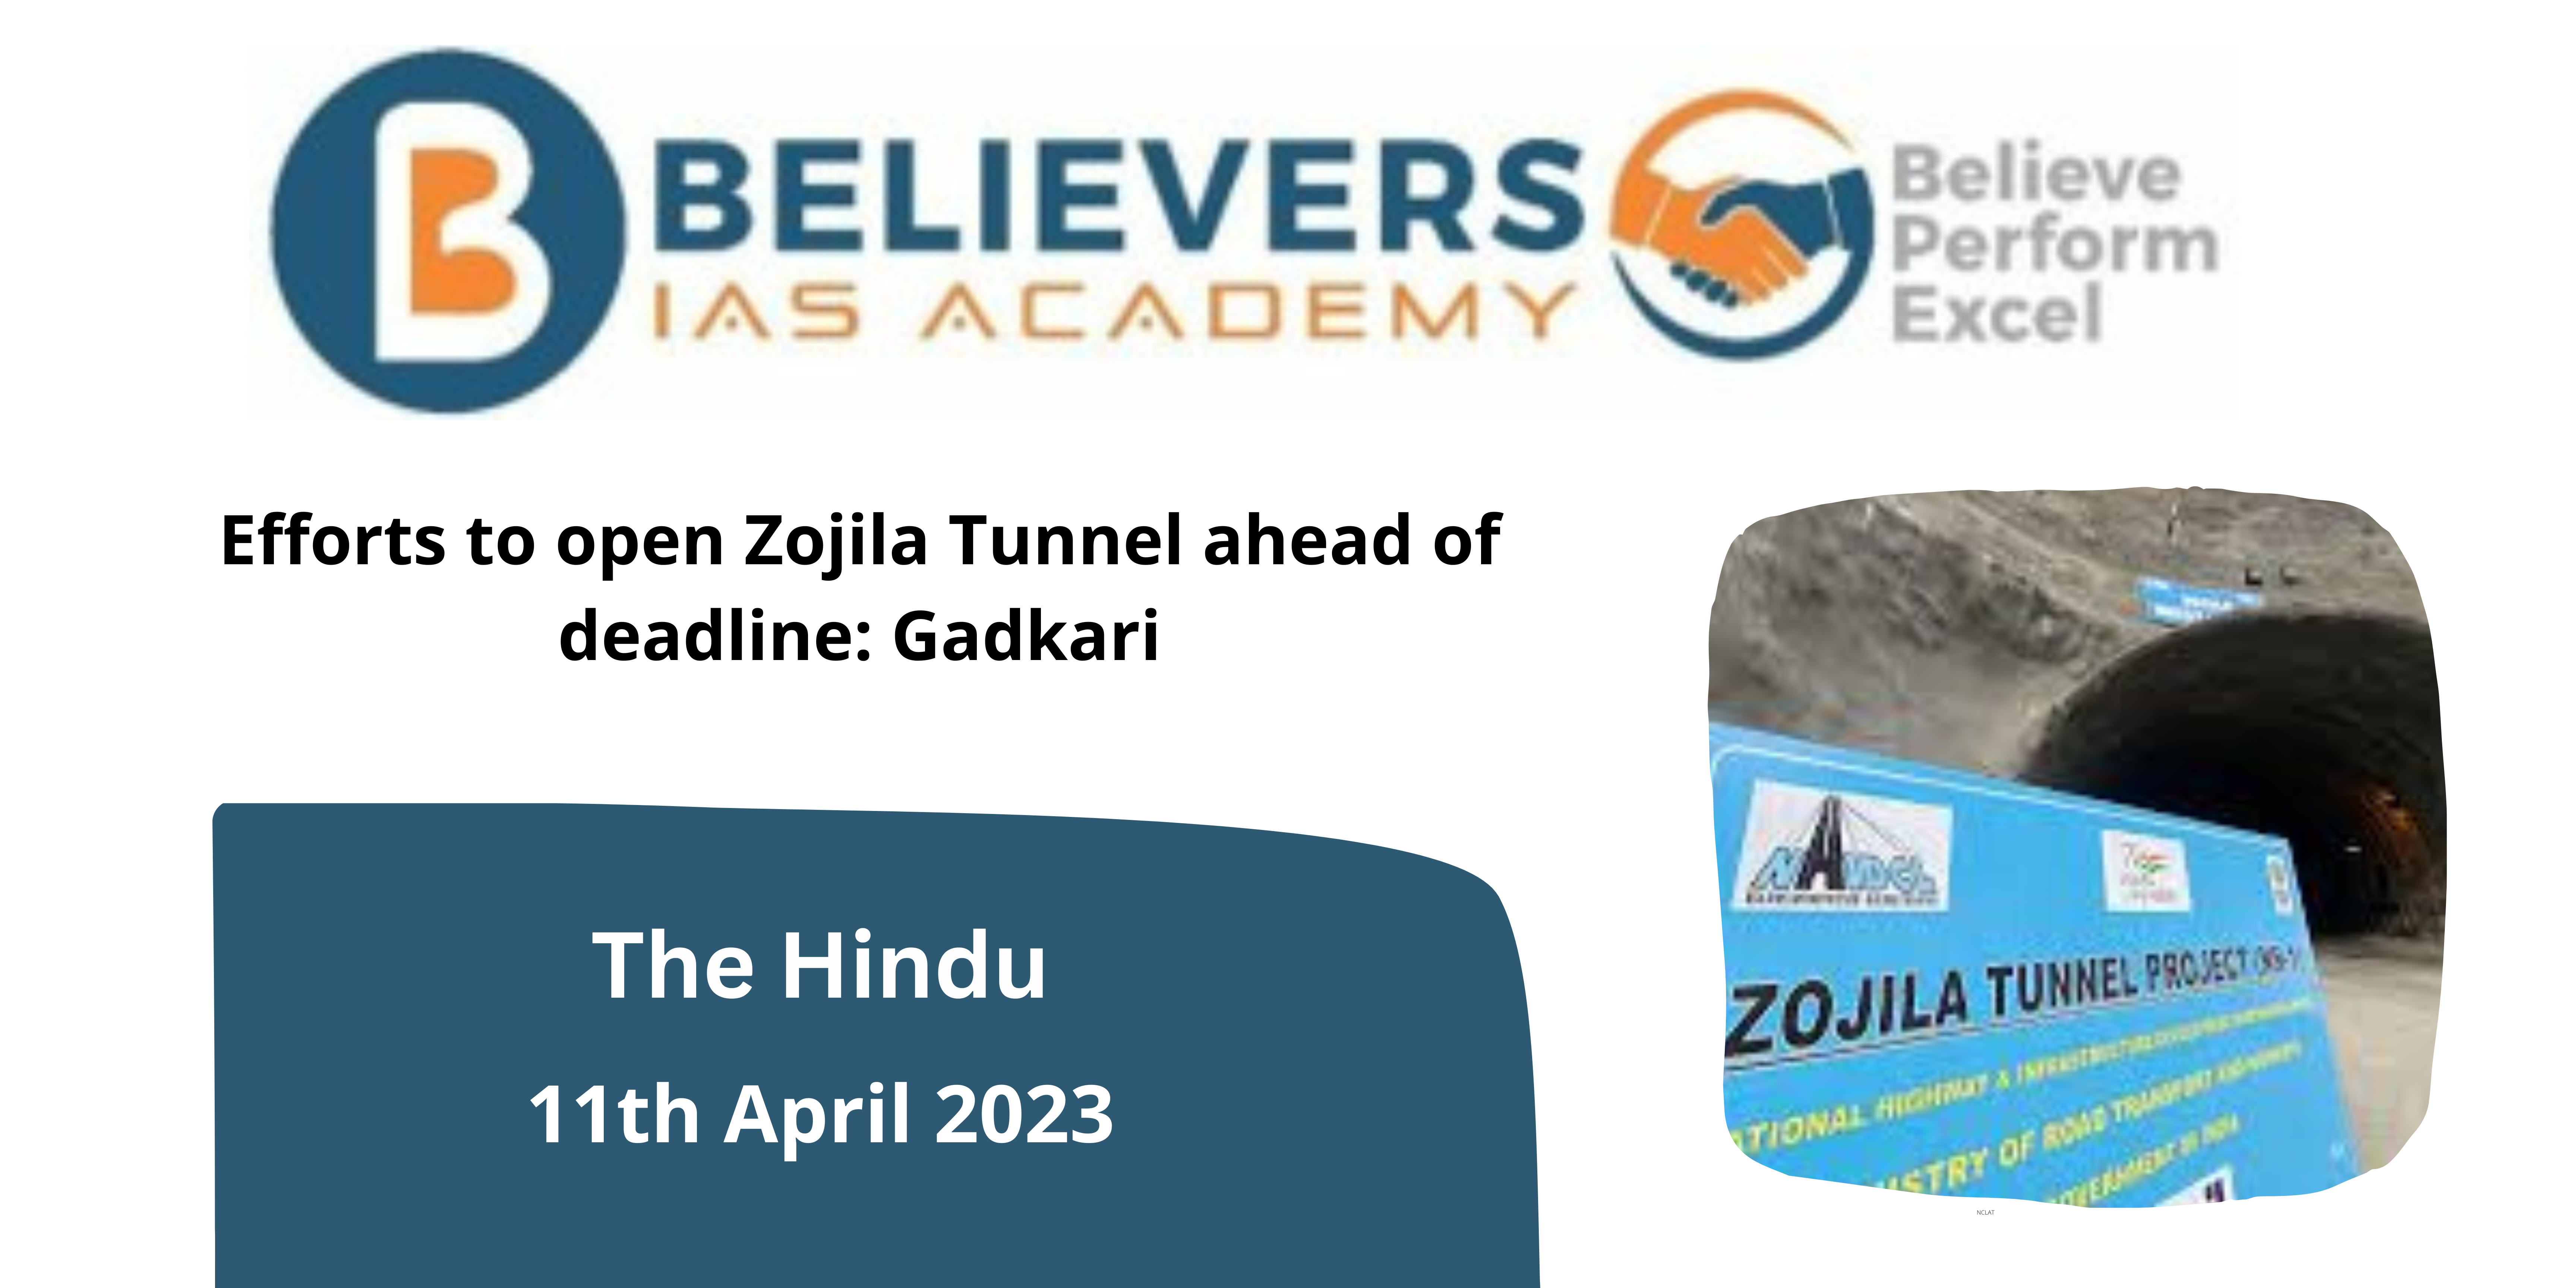 Efforts to open Zojila Tunnel ahead of deadline: Gadkari